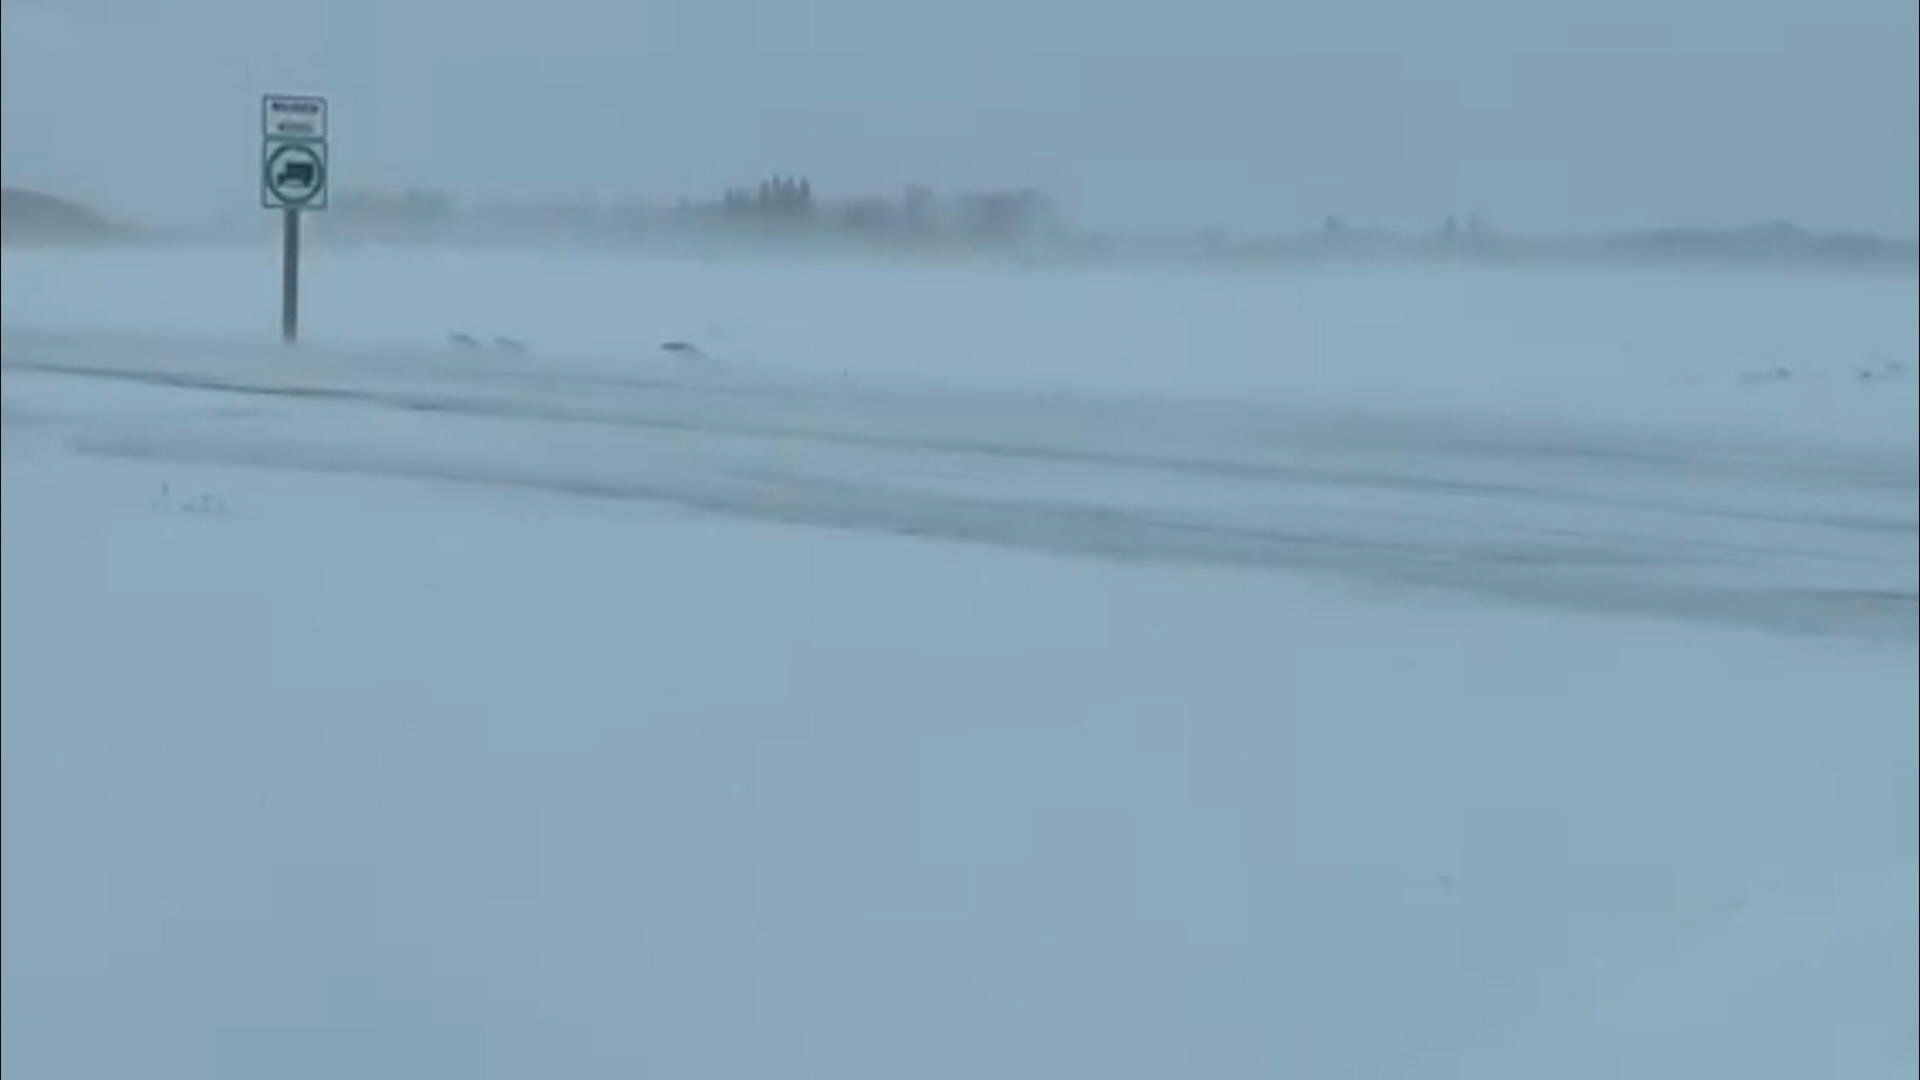 Blizzard conditions in western Saskatchewan